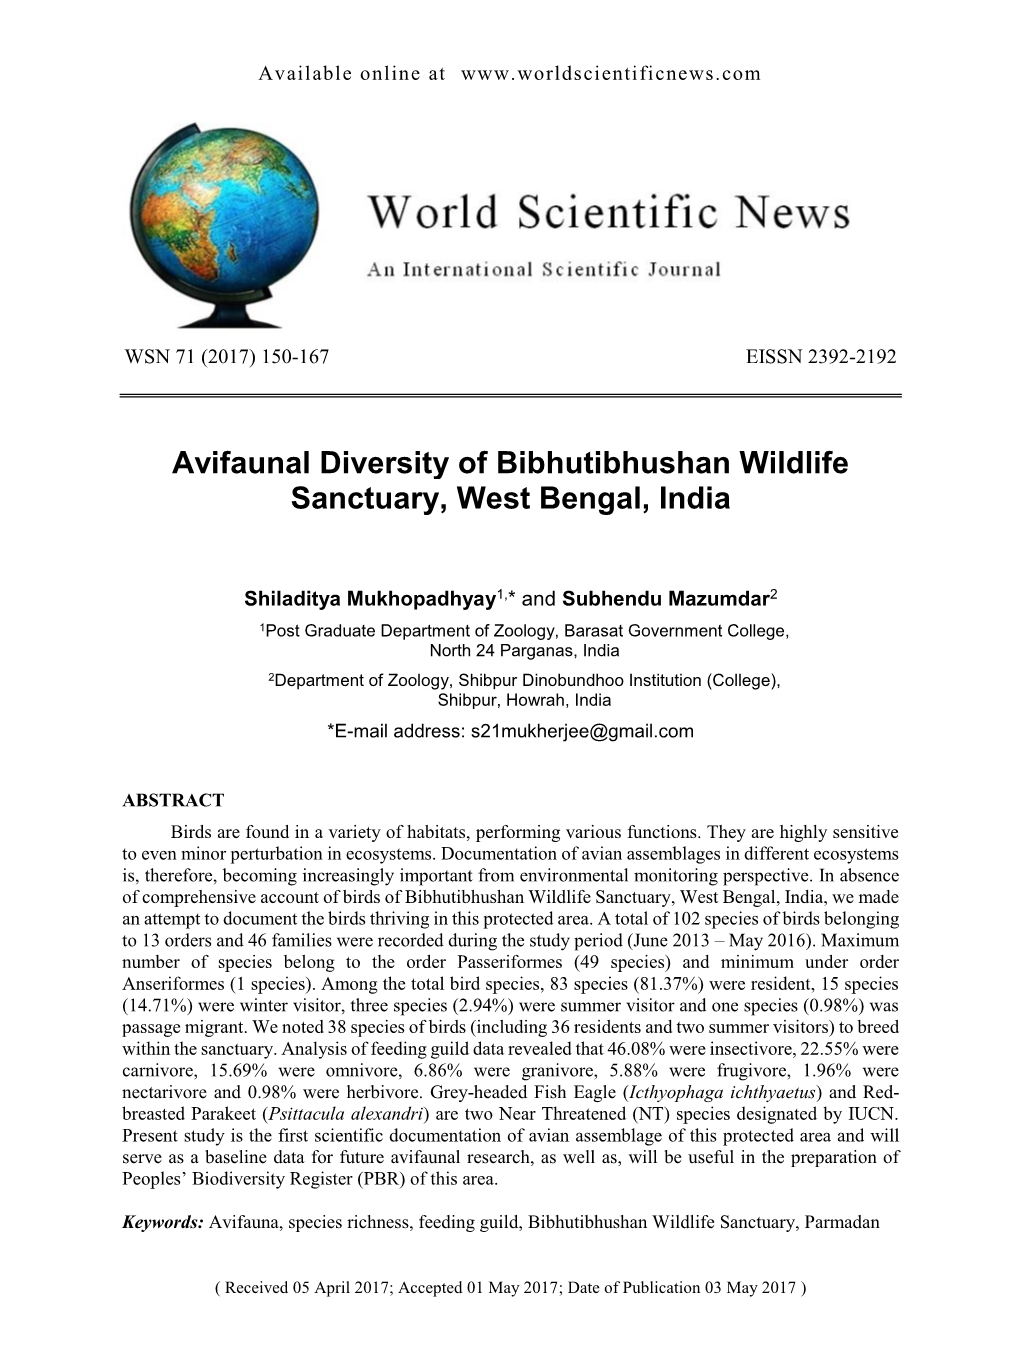 Avifaunal Diversity of Bibhutibhushan Wildlife Sanctuary, West Bengal, India